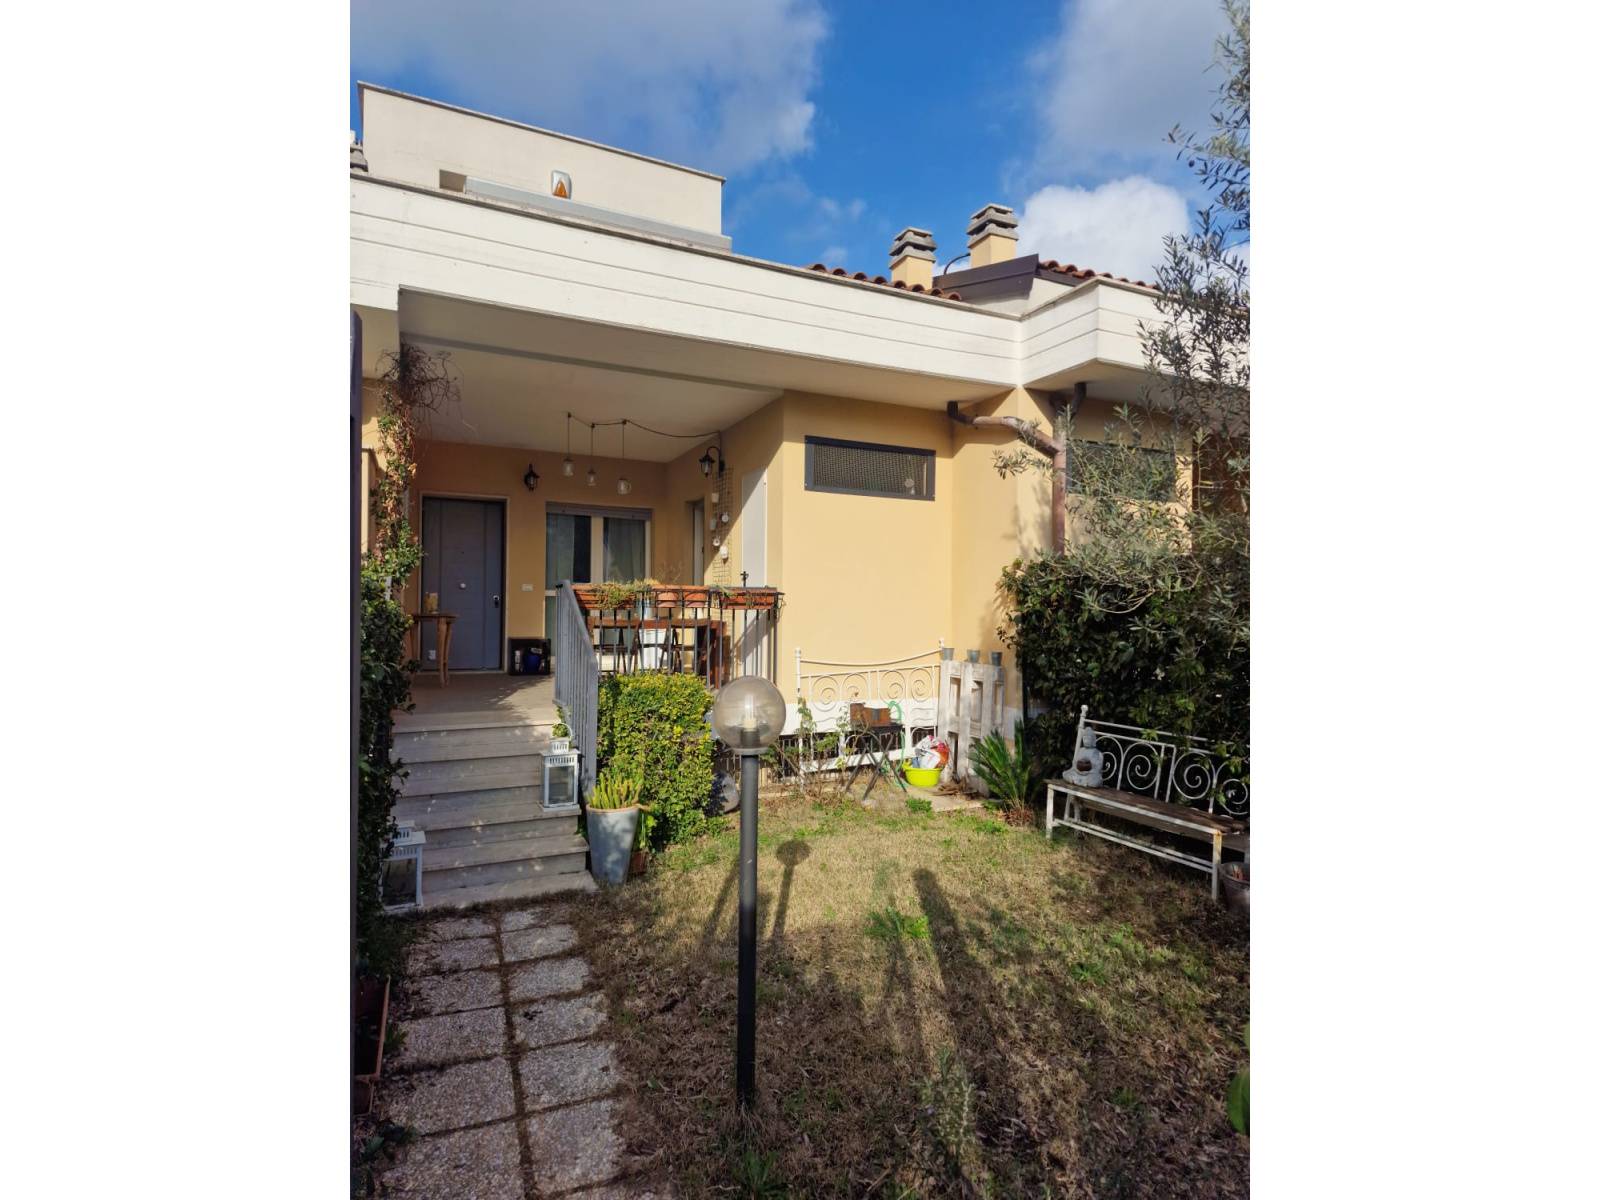 Villa in vendita a Roma, 3 locali, zona Zona: 27 . Aurelio - Boccea, prezzo € 310.000 | CambioCasa.it